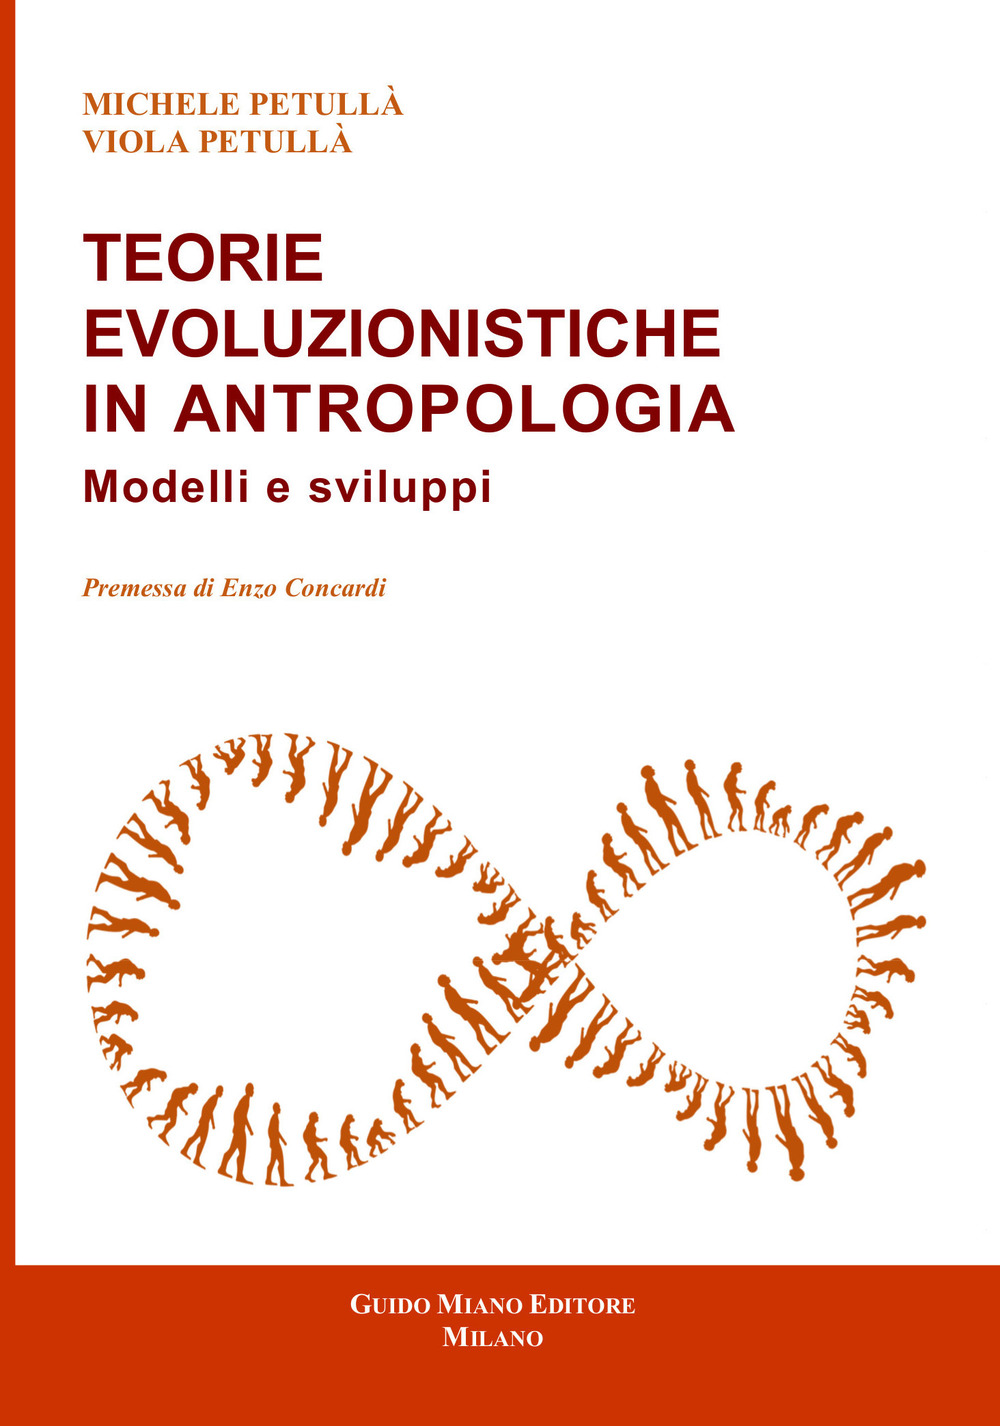 Teorie evoluzionistiche in antropologia. Modelli e sviluppi